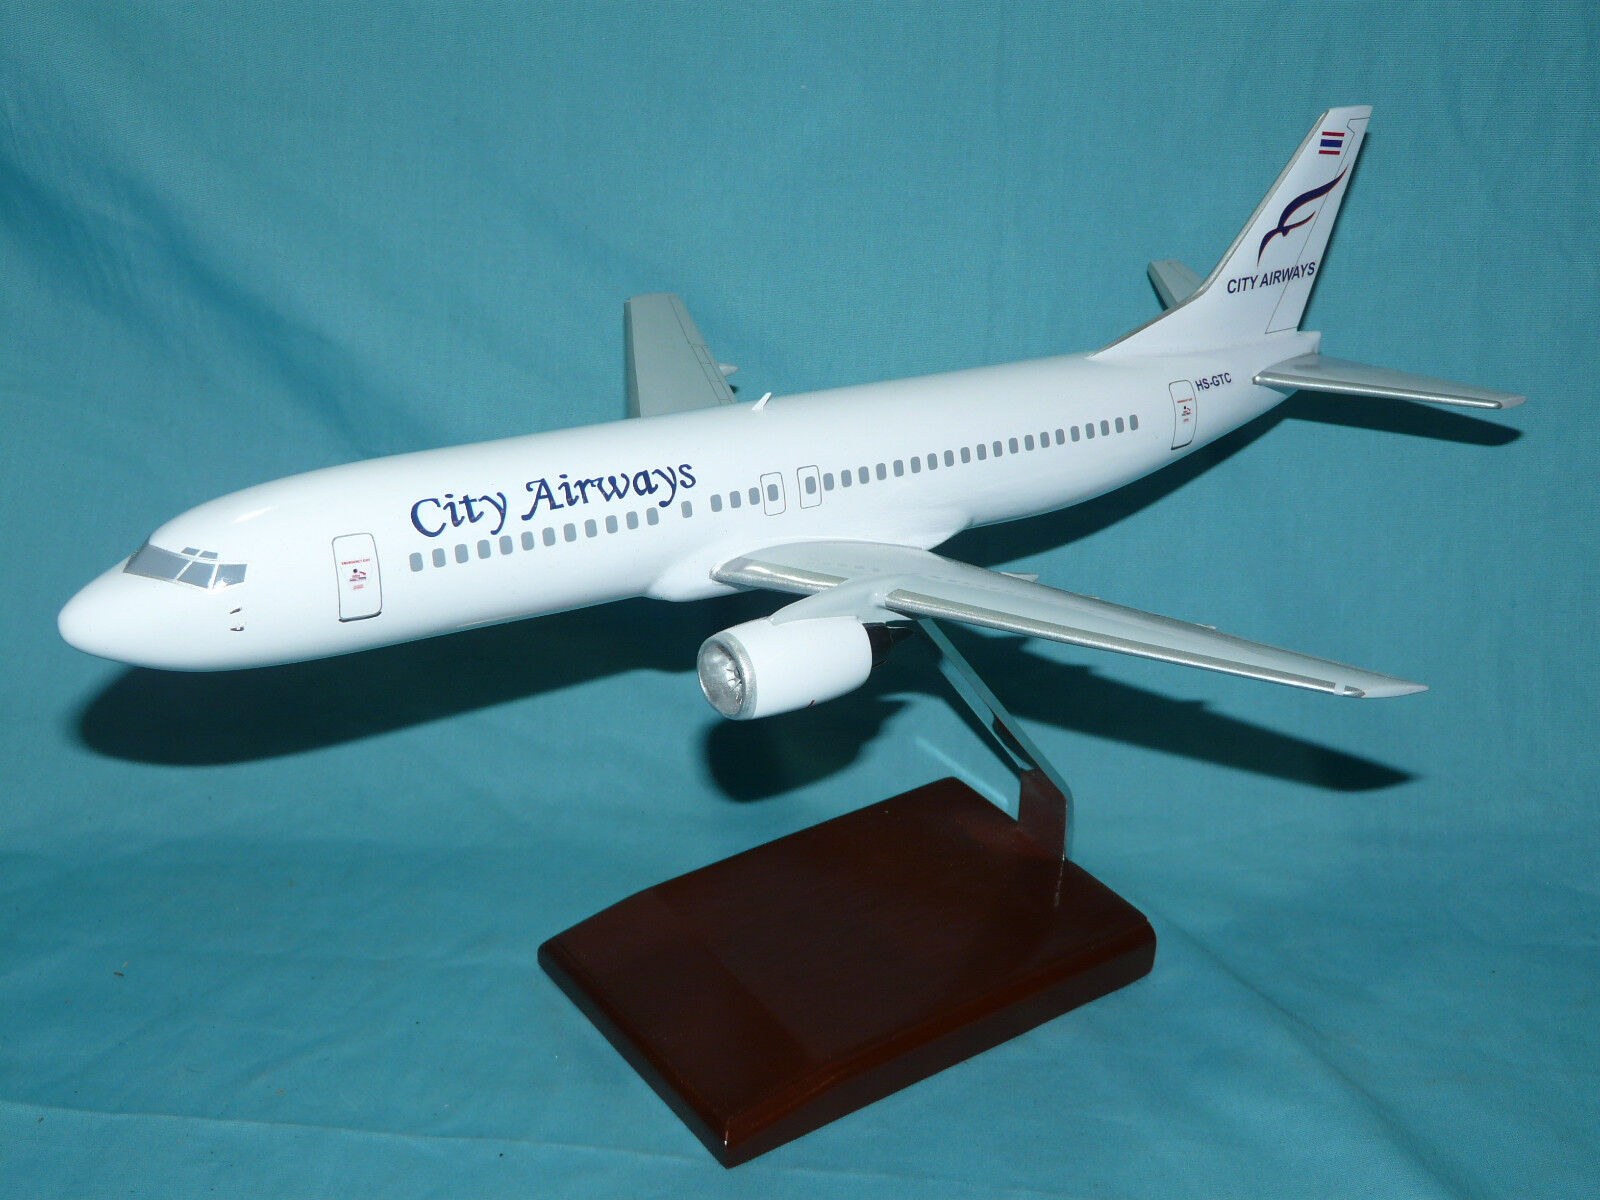 City Airways Boeing 737-430 400 HS-GTC Large Desktop Model Airplane Detailed BIG